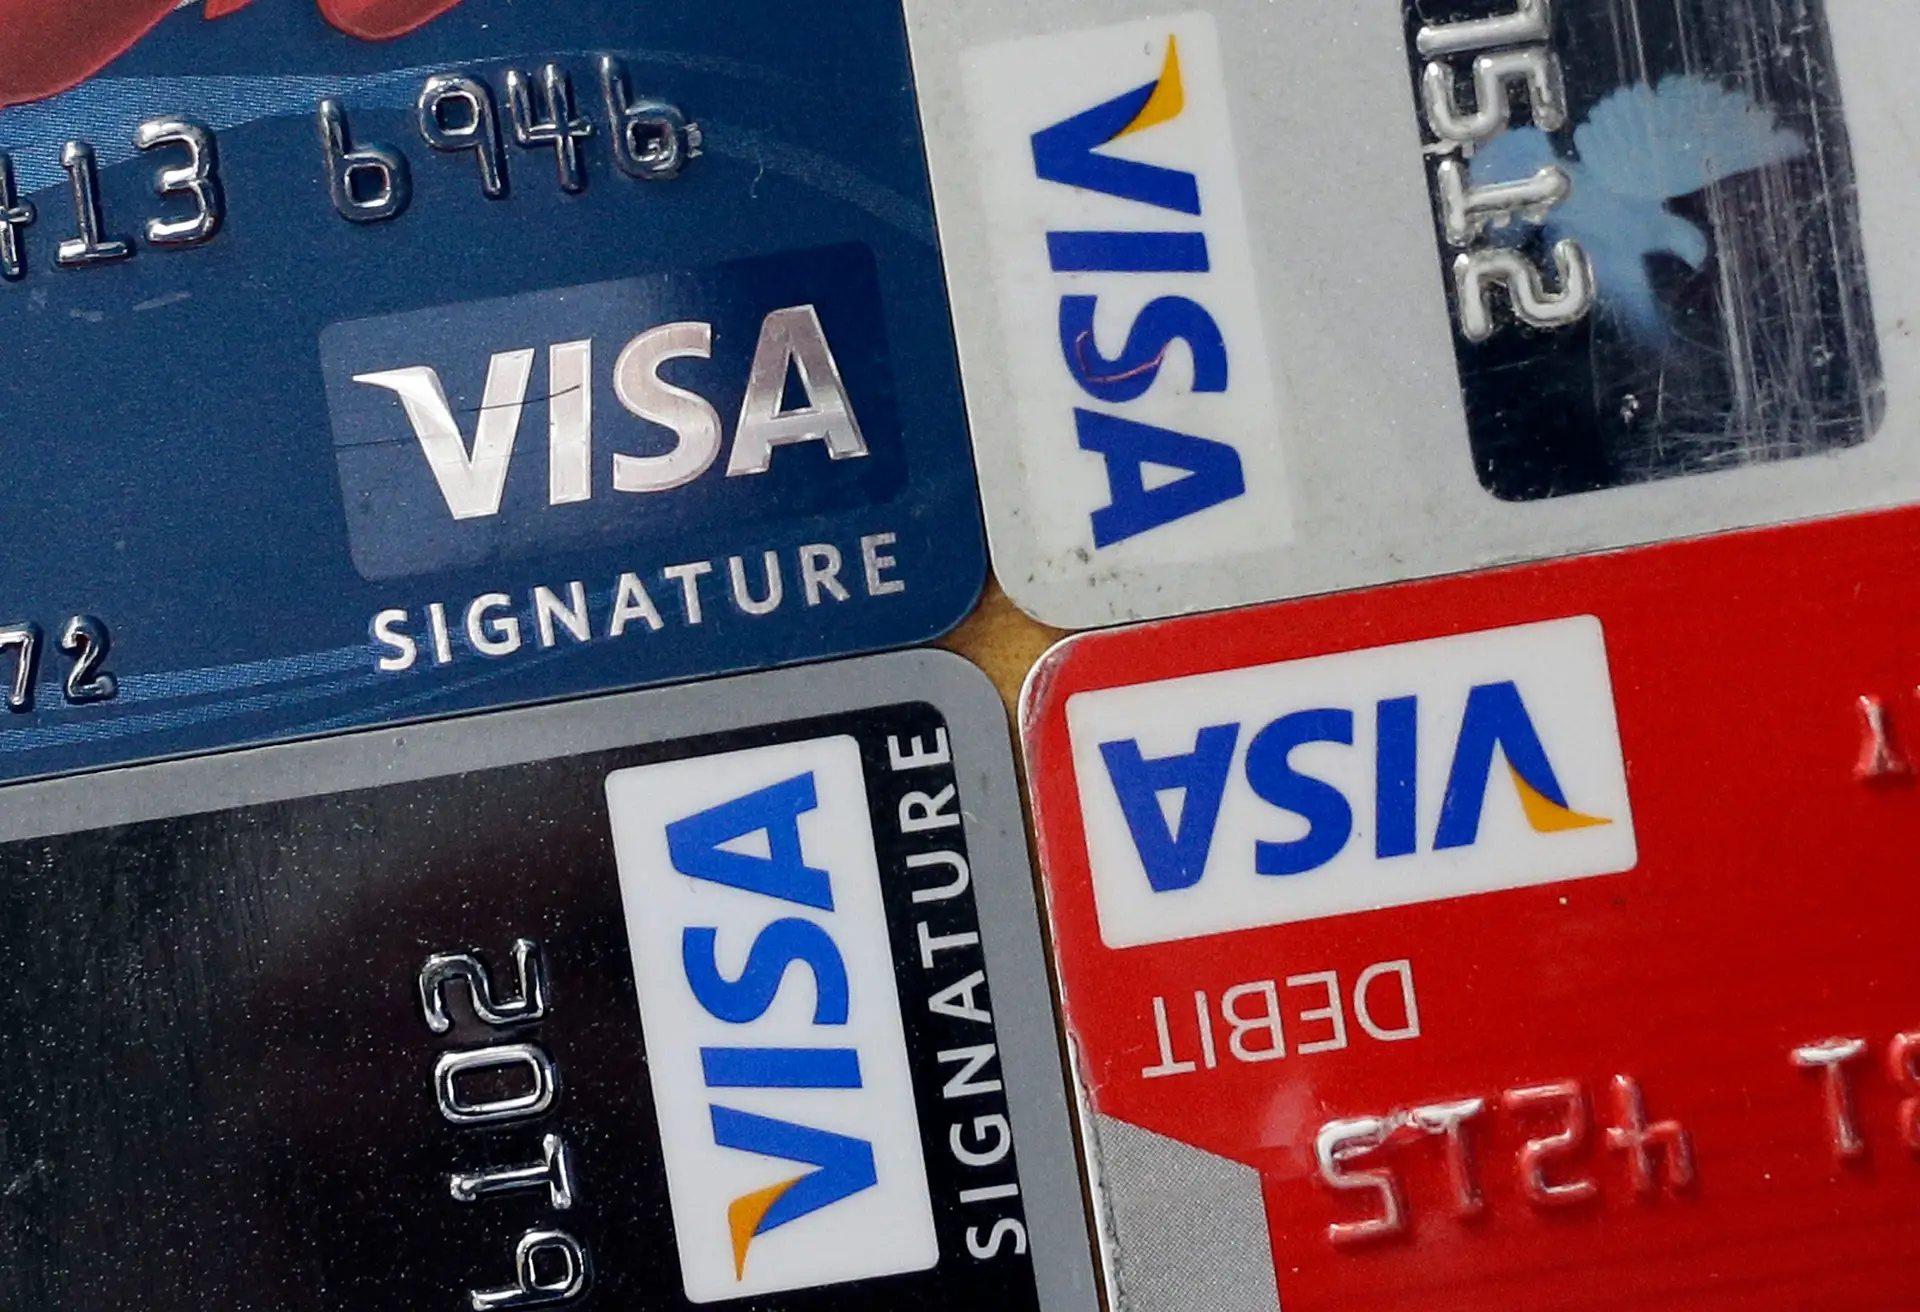 Visa rescindiu acordos de cartão de débito com a FTX